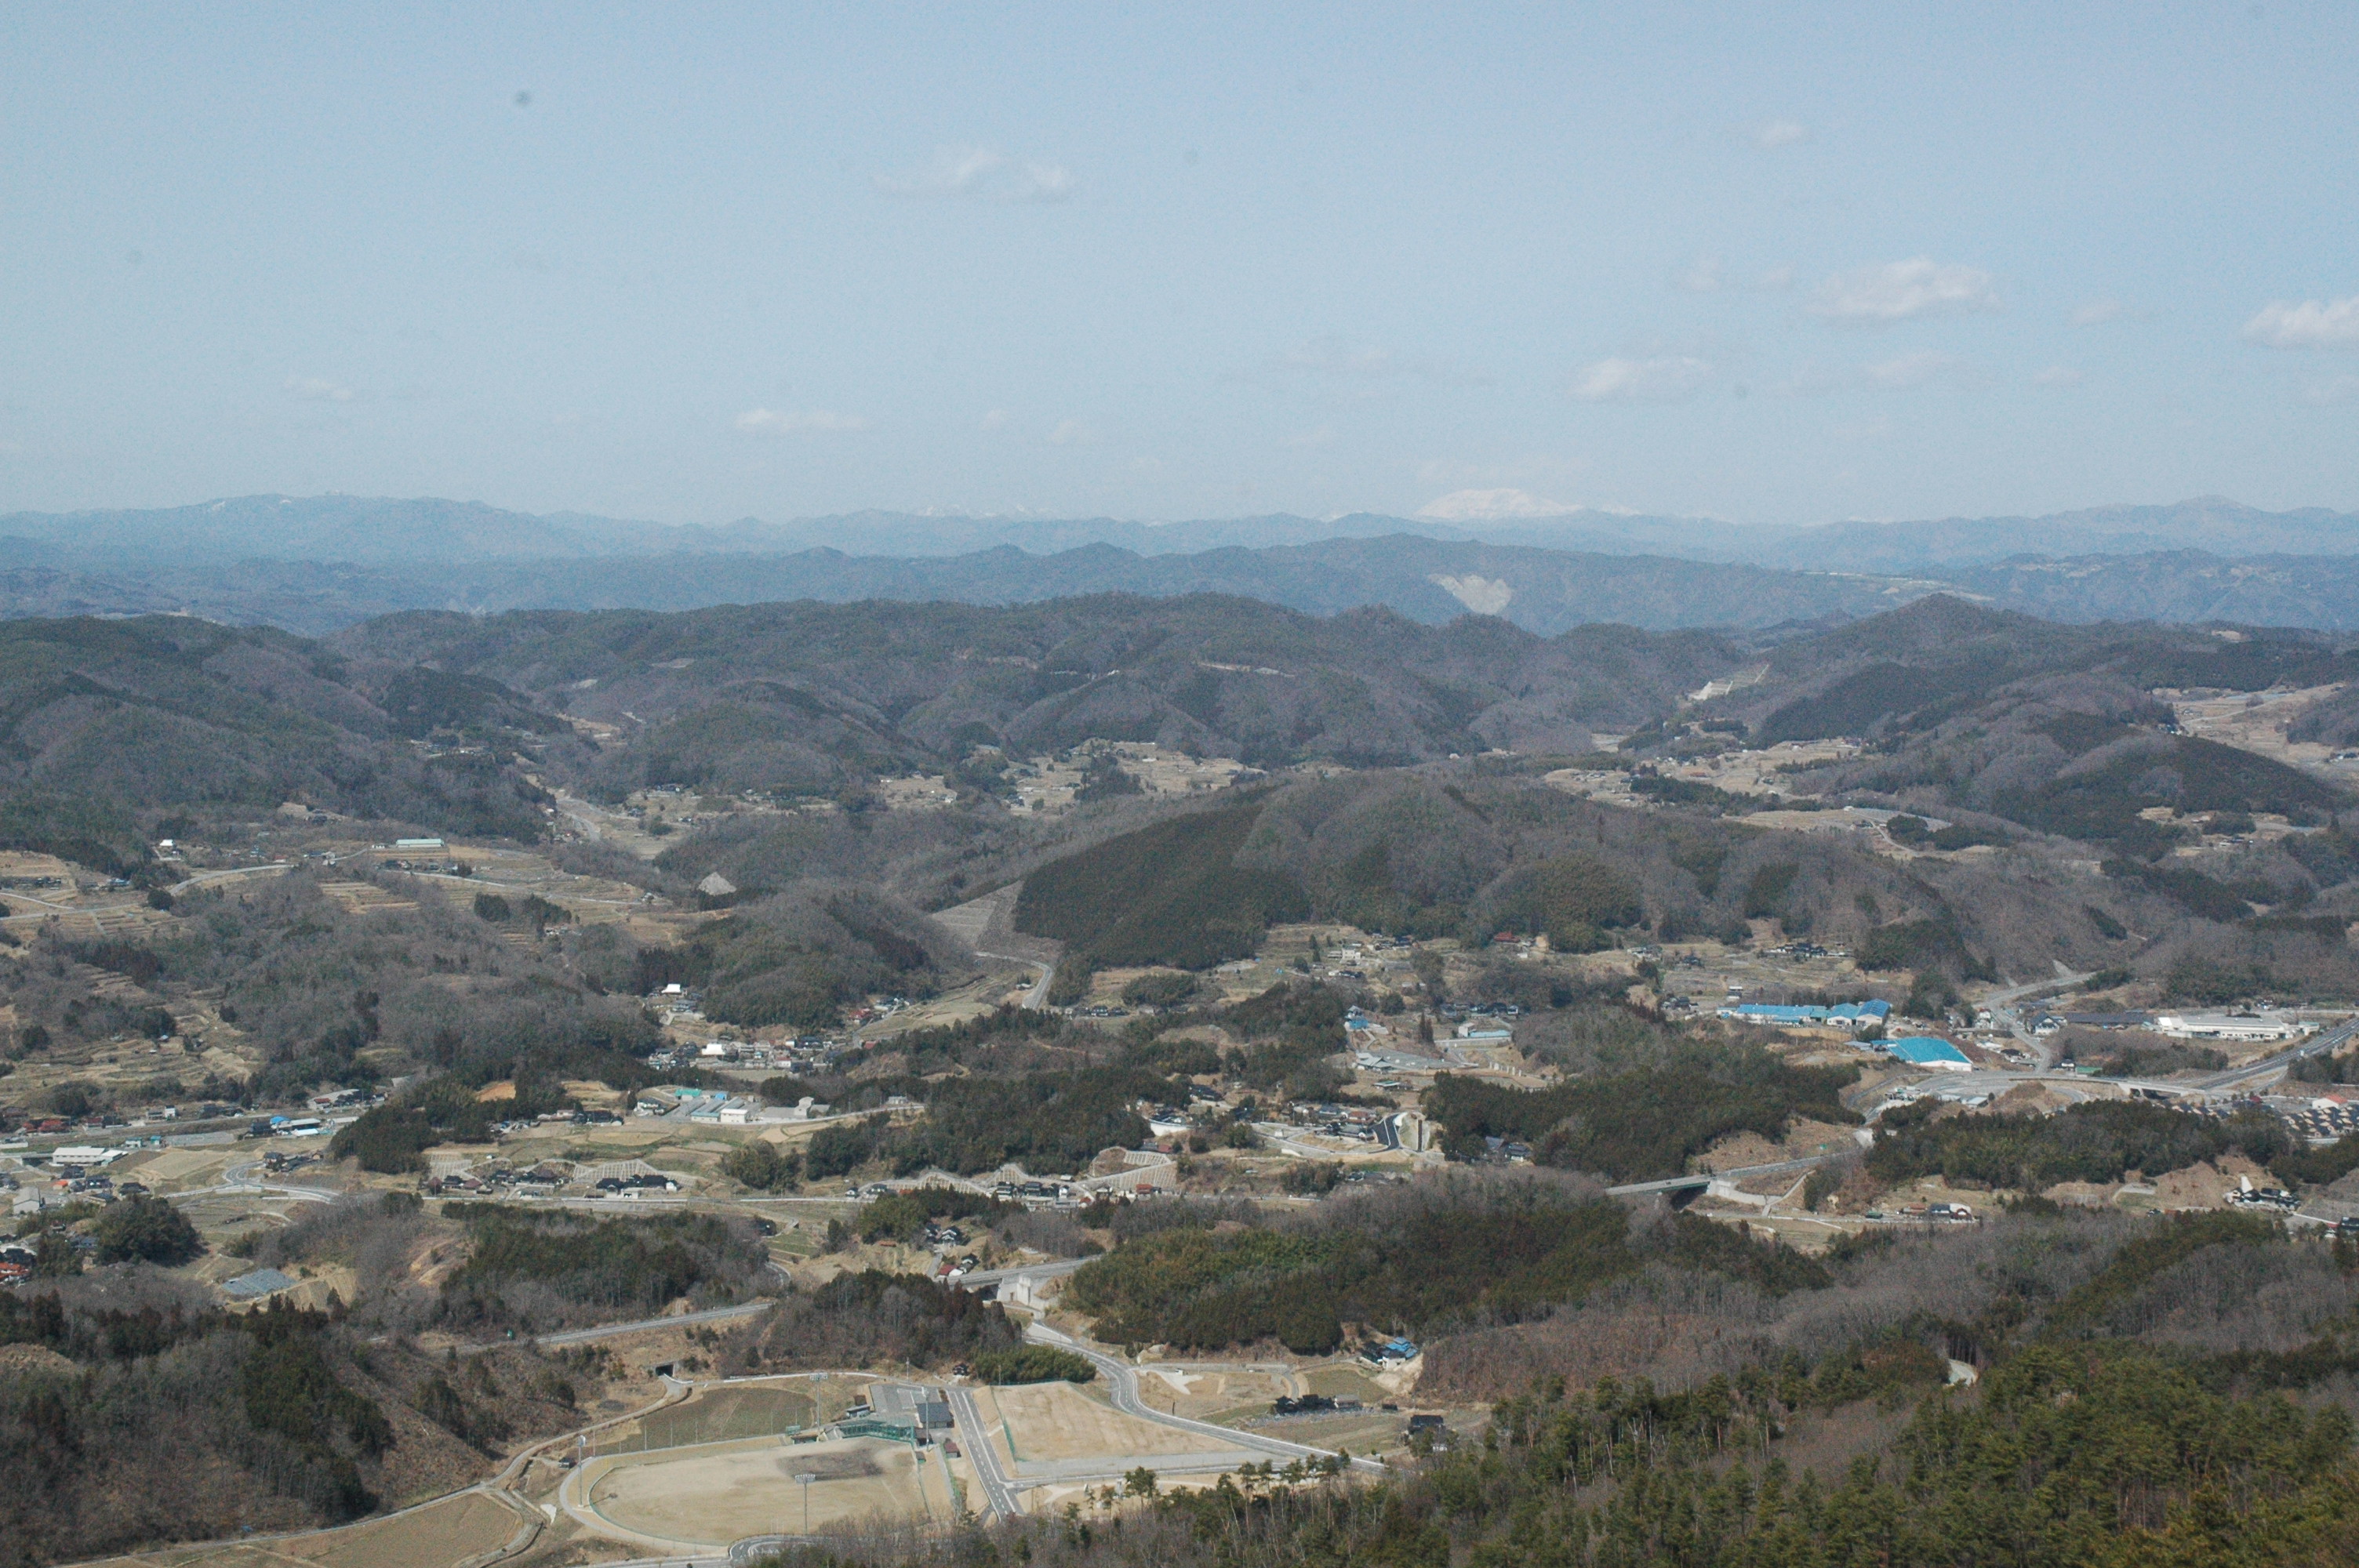 権現山展望台からの眺望 (JPG/1.48MB)